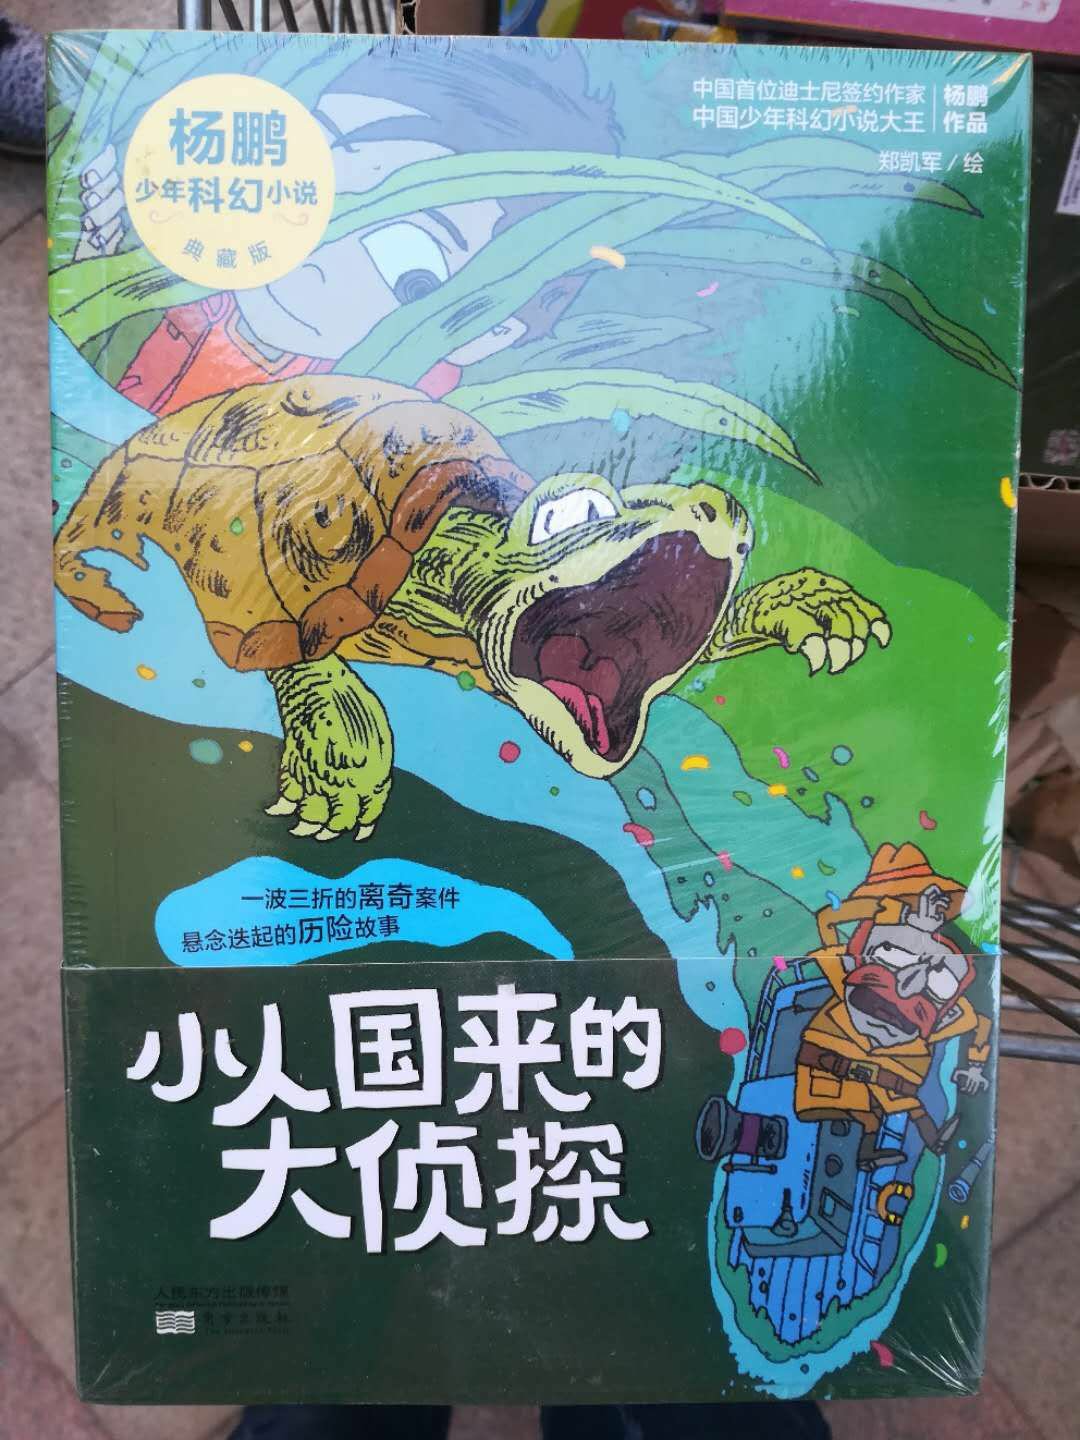 杨鹏的作品孩子喜欢，出新书了一定要买，内容有趣，孩子看的不亦乐乎，不错的书